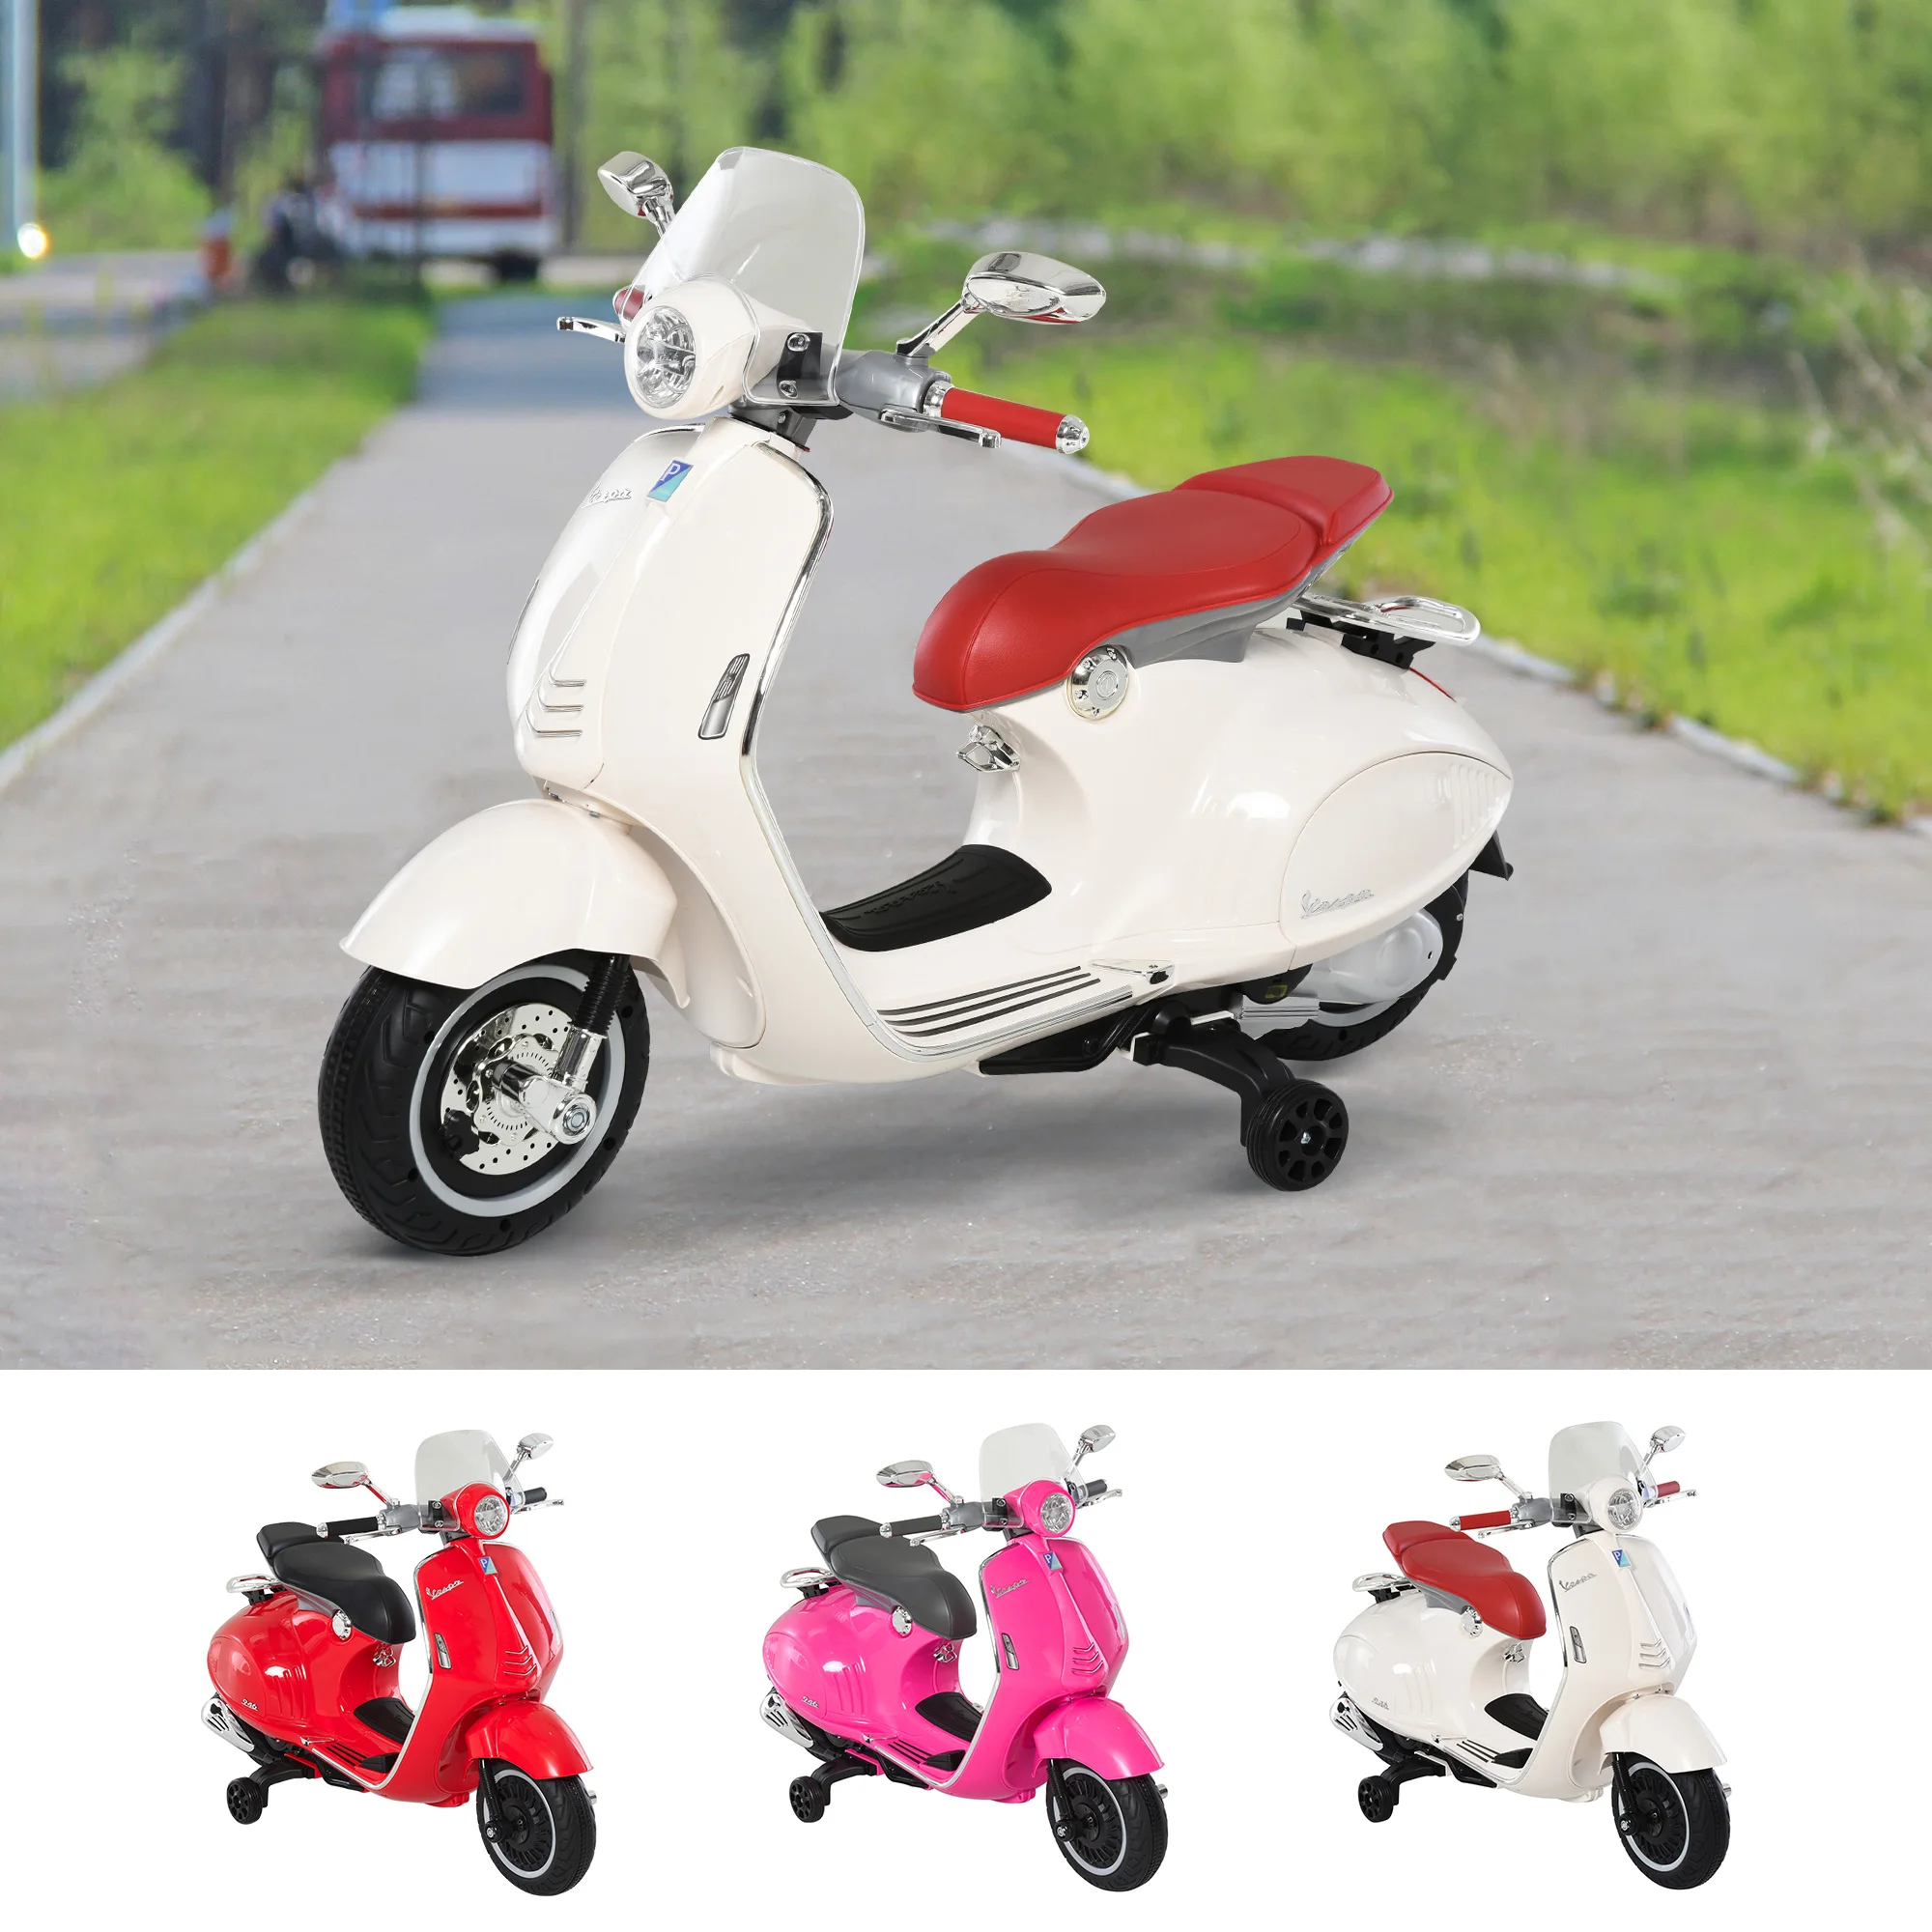 Homcom - HOMCOM Moto scooter électrique pour enfants 6 V env. 3 Km